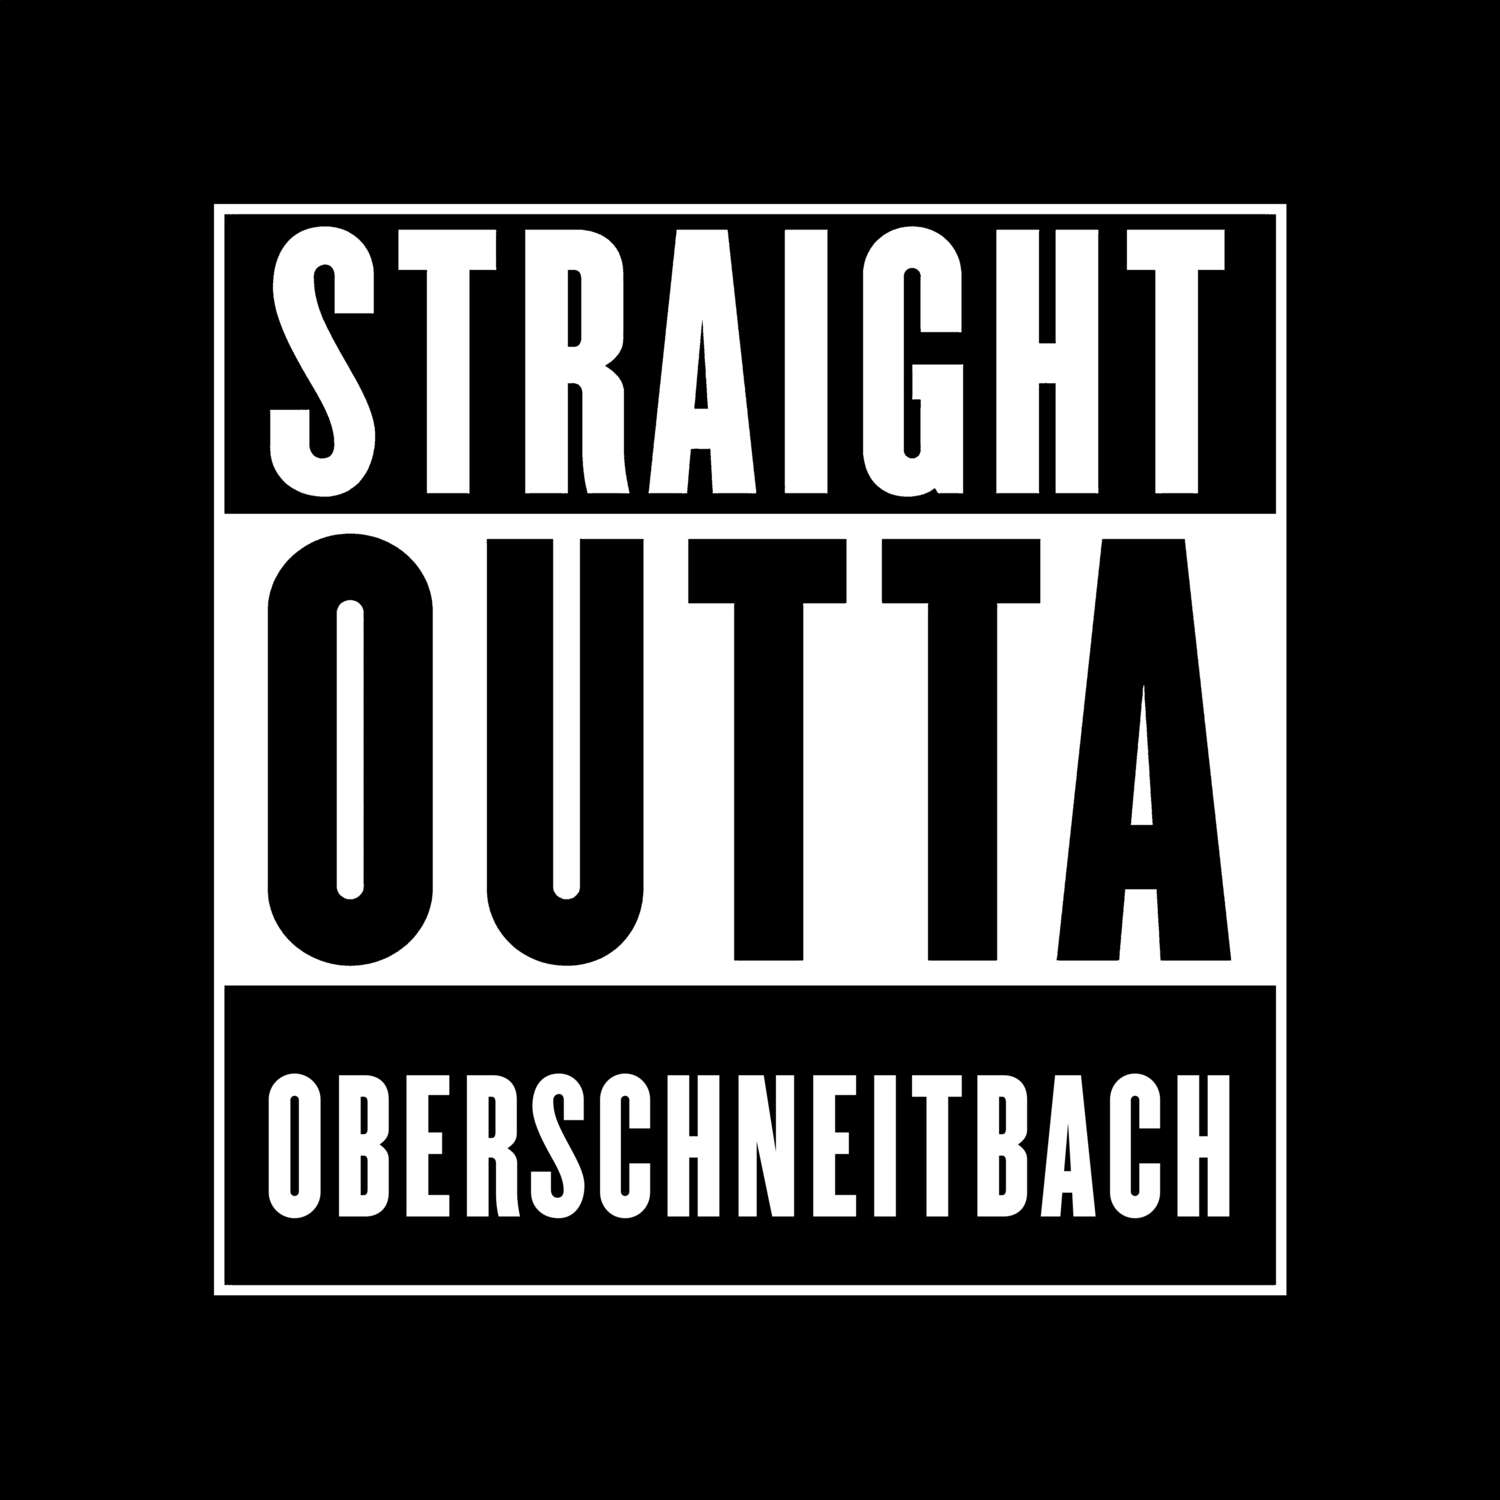 Oberschneitbach T-Shirt »Straight Outta«